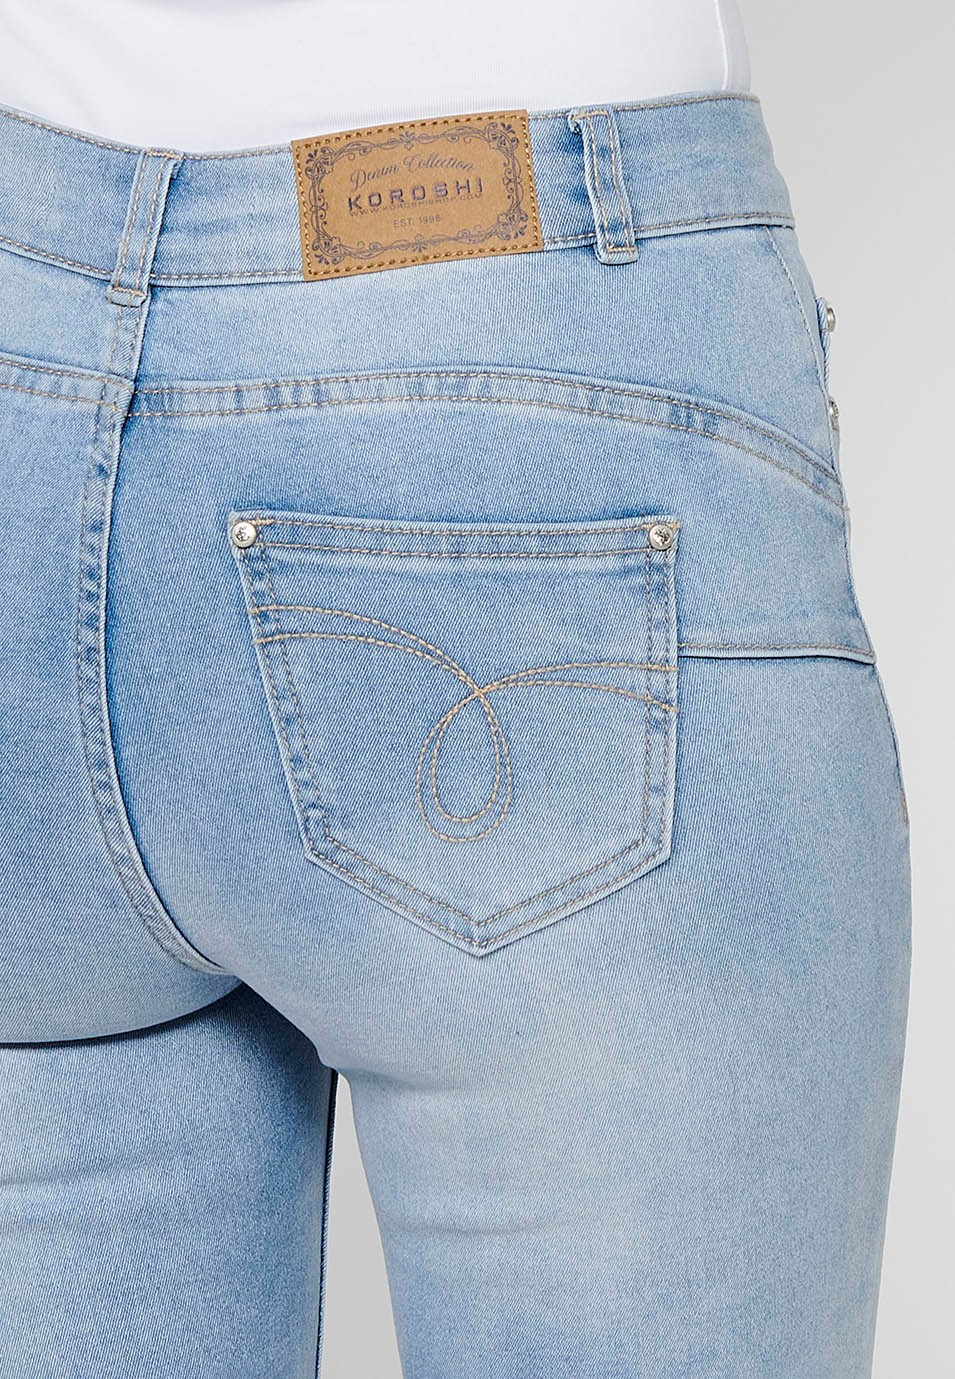 Pantalons llargs jeans slim amb Tancament davanter amb cremallera i Detalls brodats florals de Color Blau clar per a Dona 9